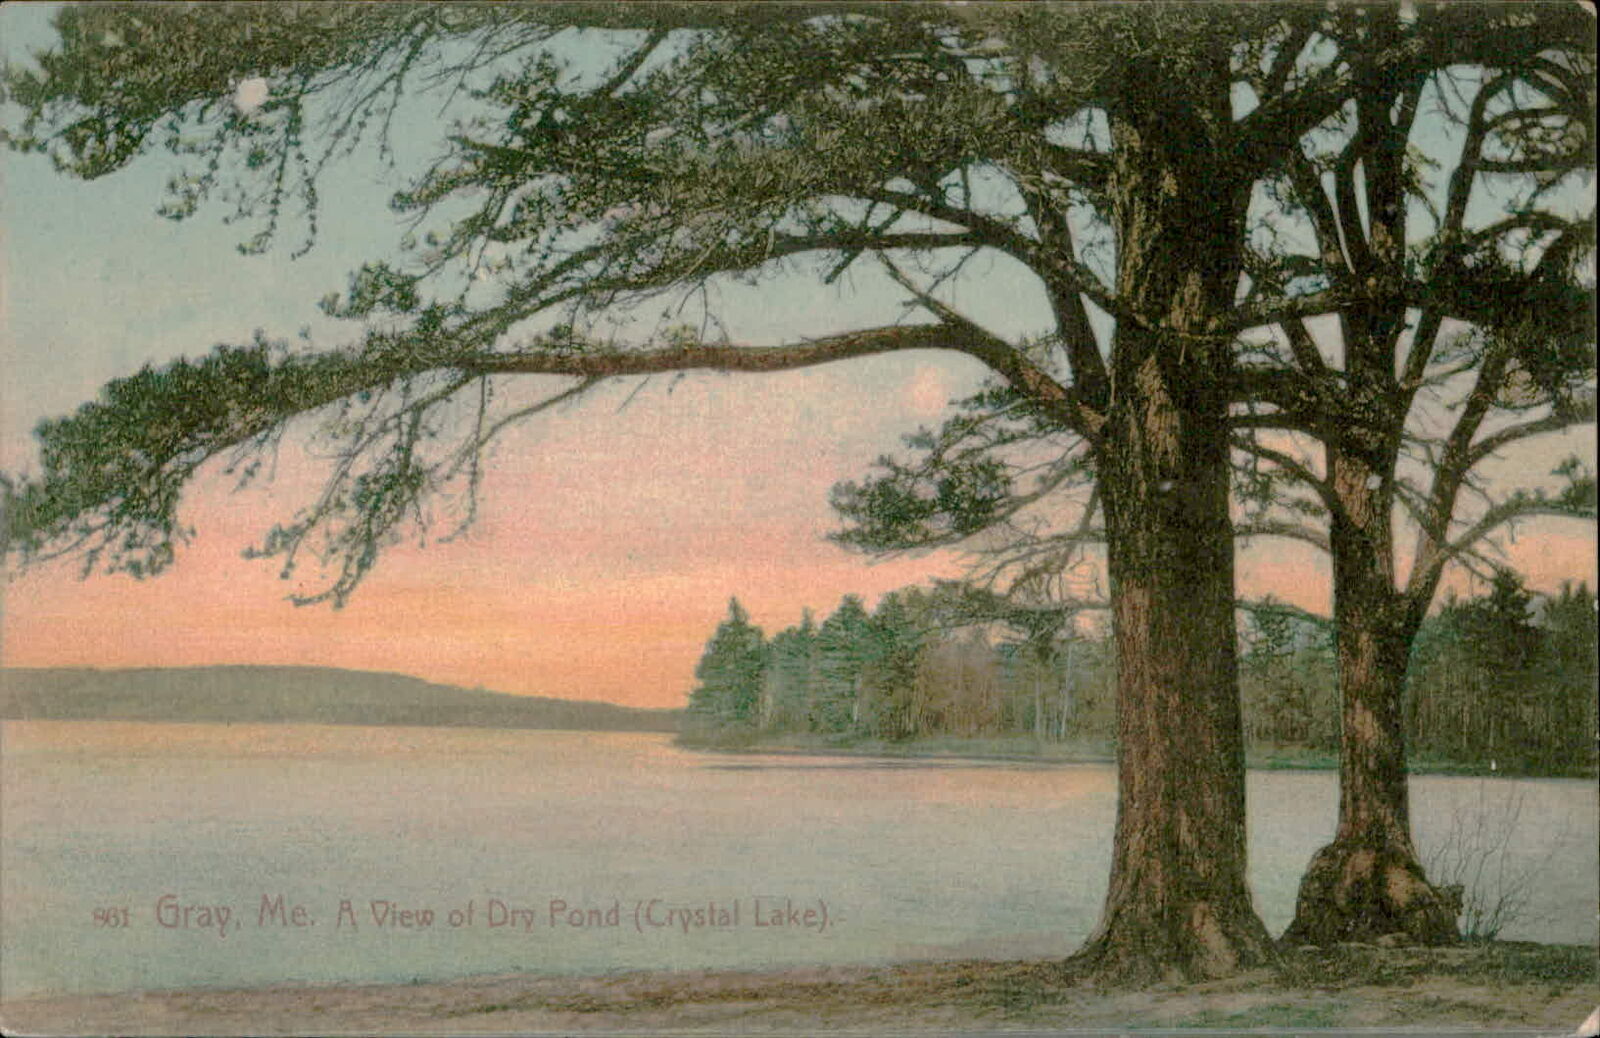 Postcard: 961 Gray, Me. A View of Dry Pond (Crystal Lake). TUSHOT